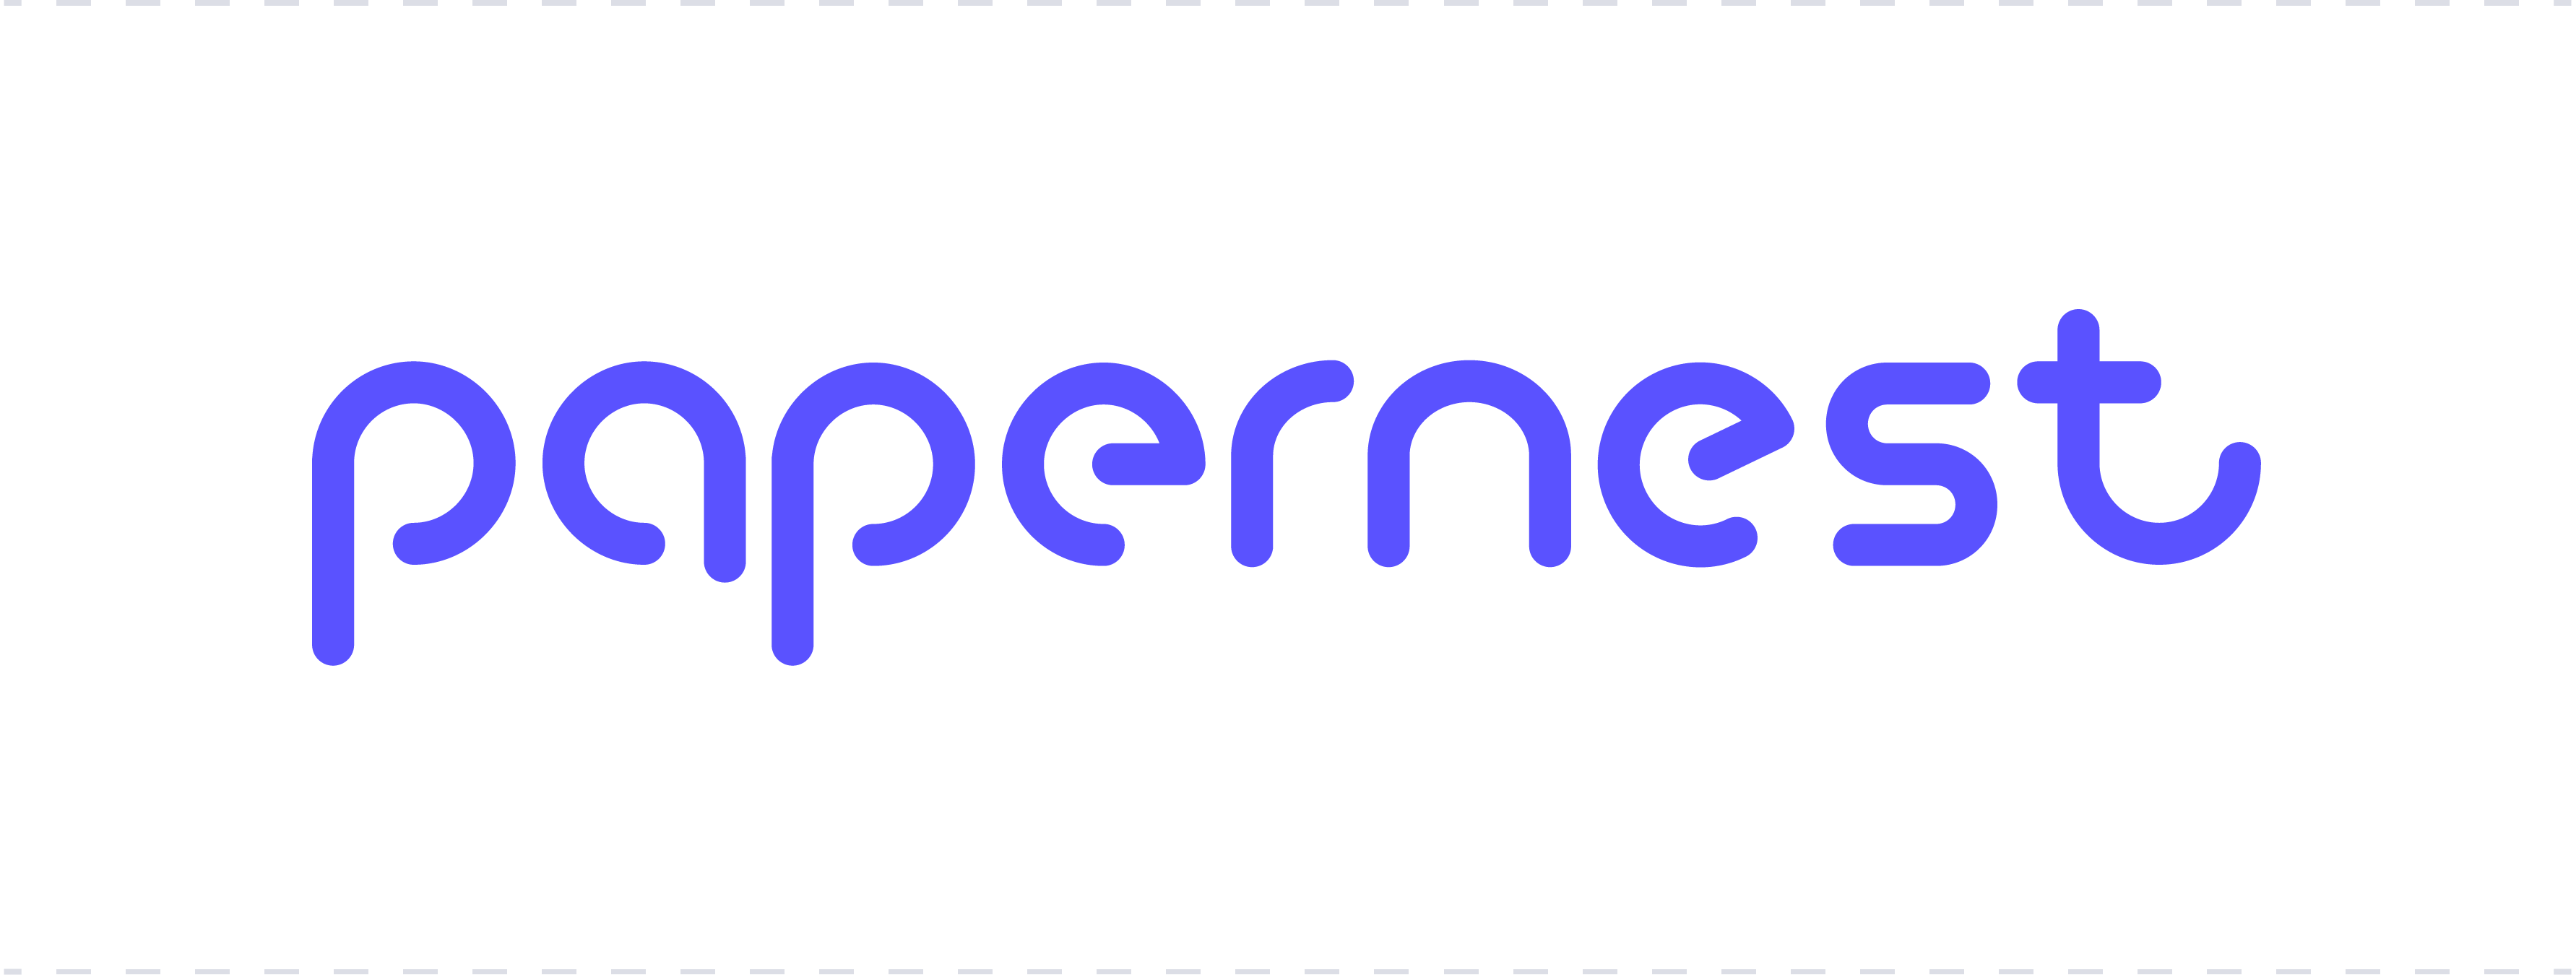 logo papernest